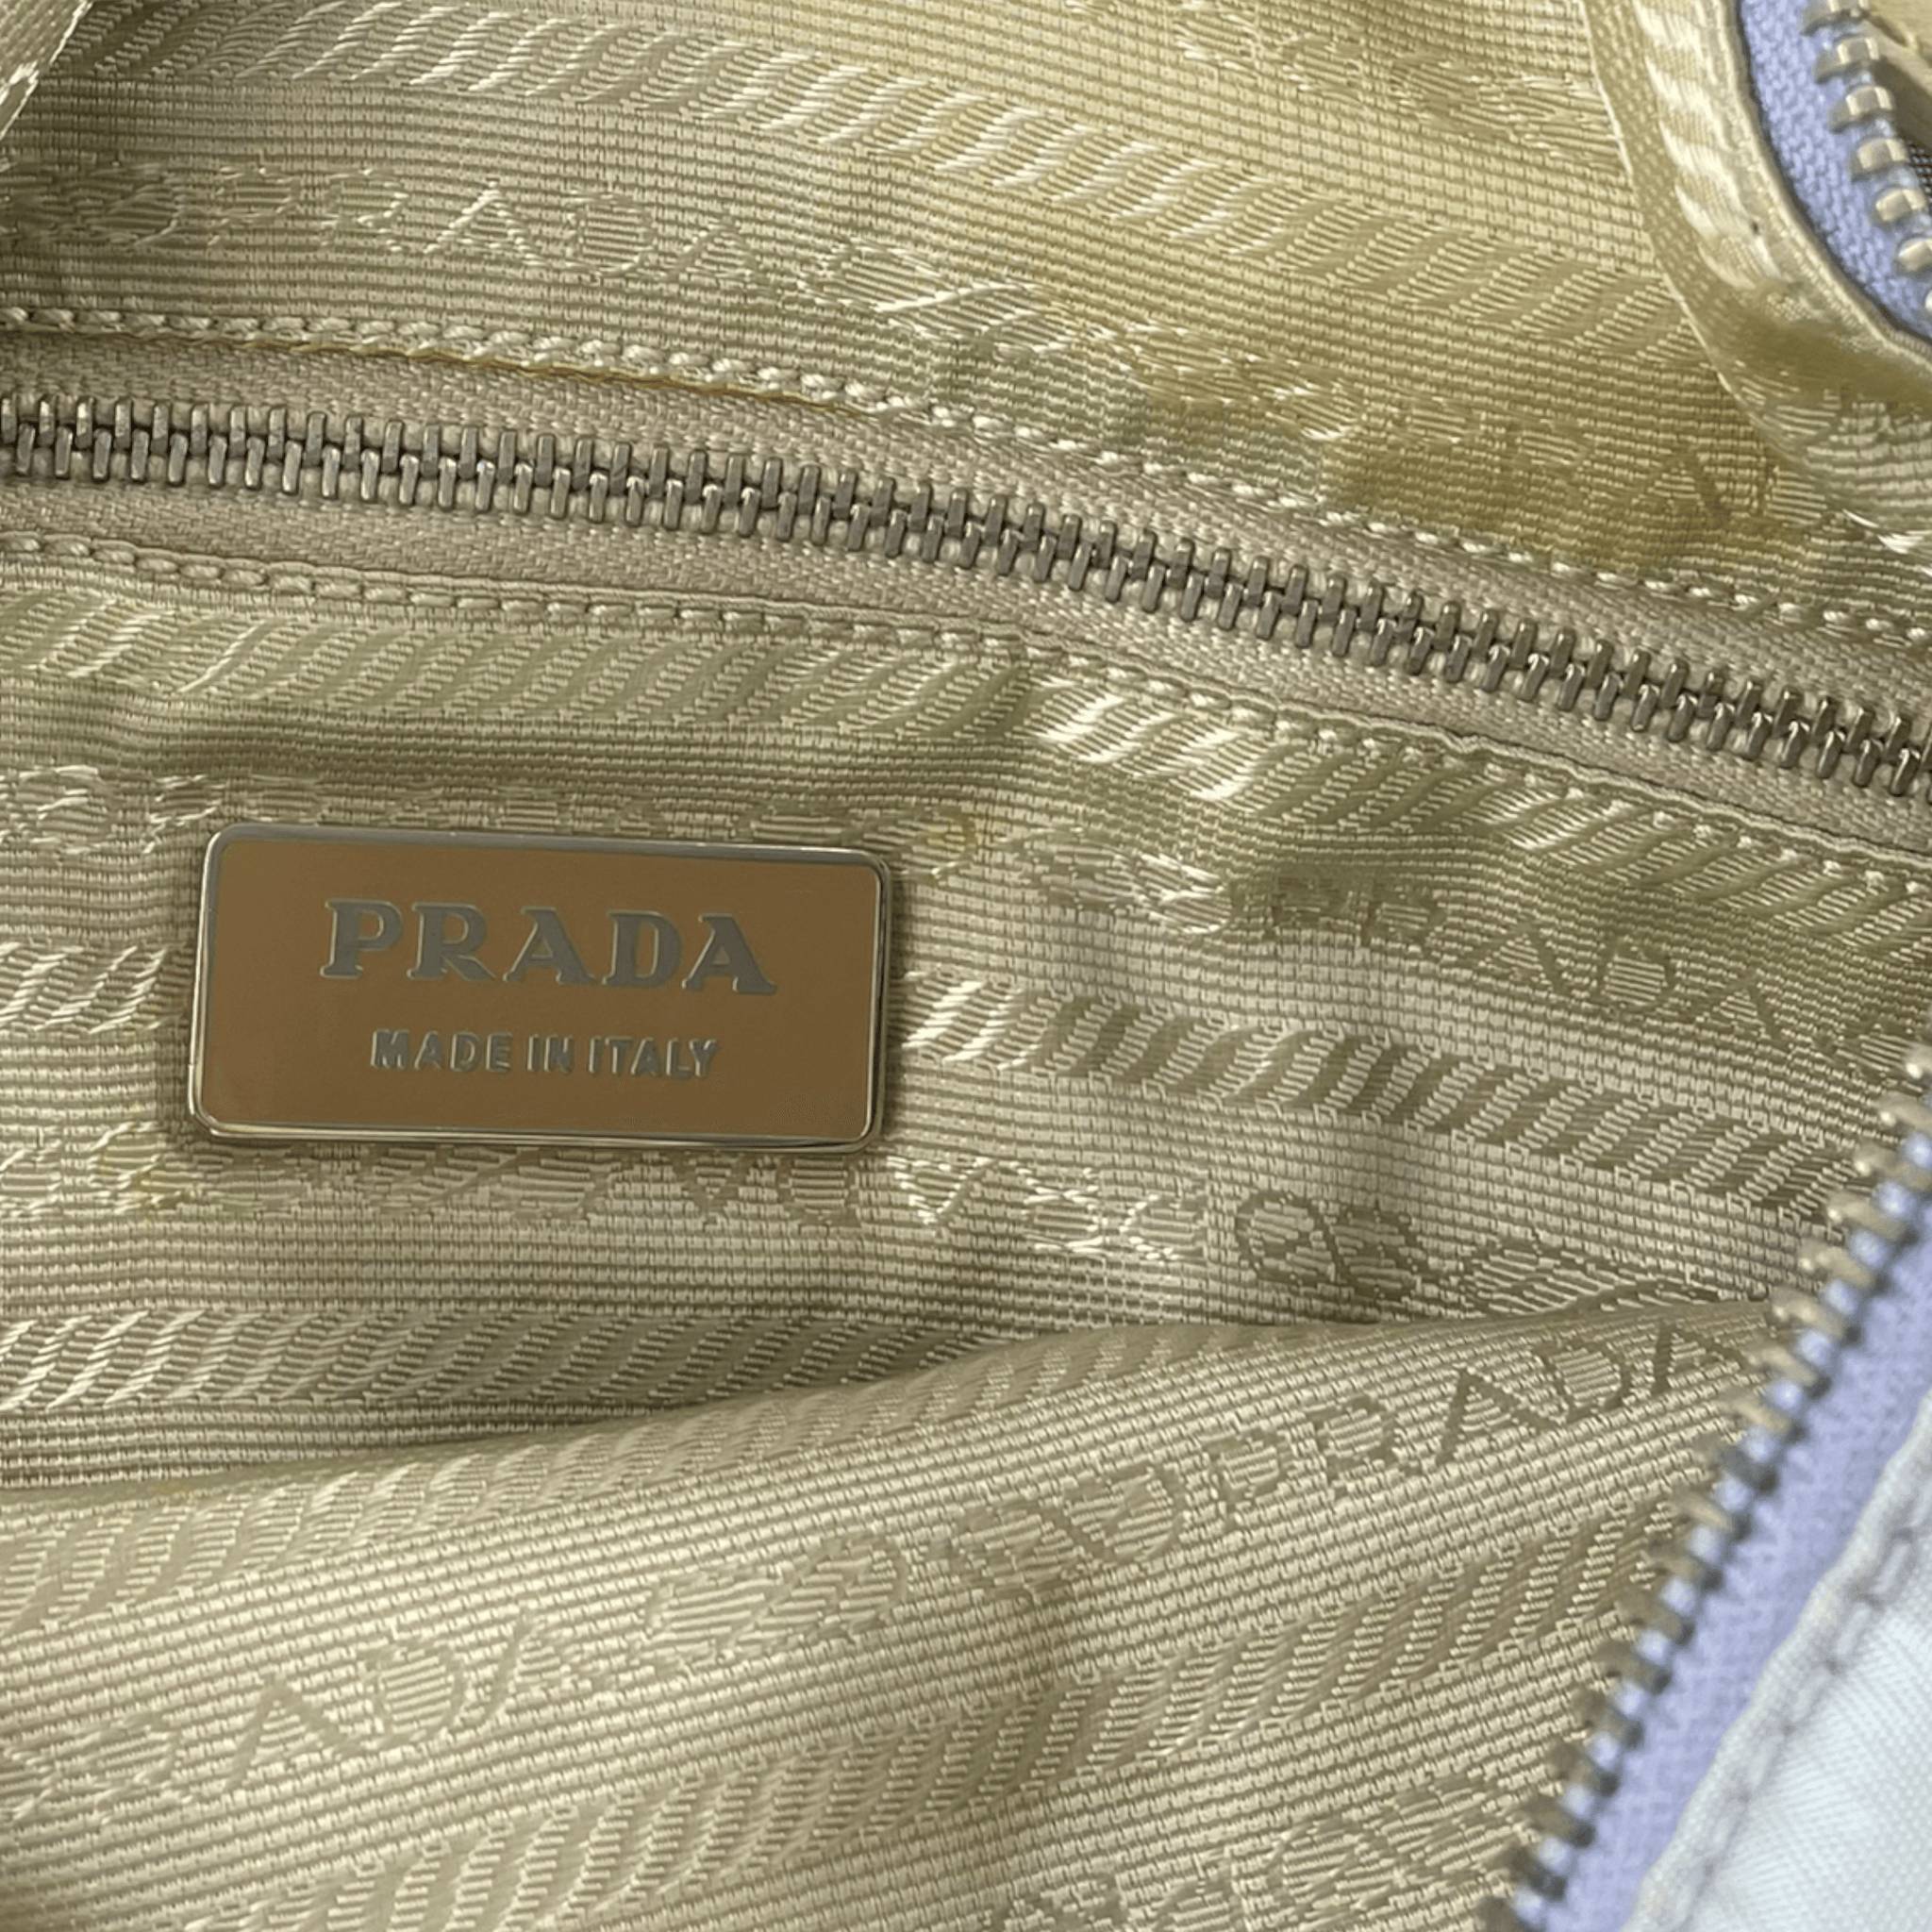 Vintage Prada nylon shoulder bag - second wave vintage store